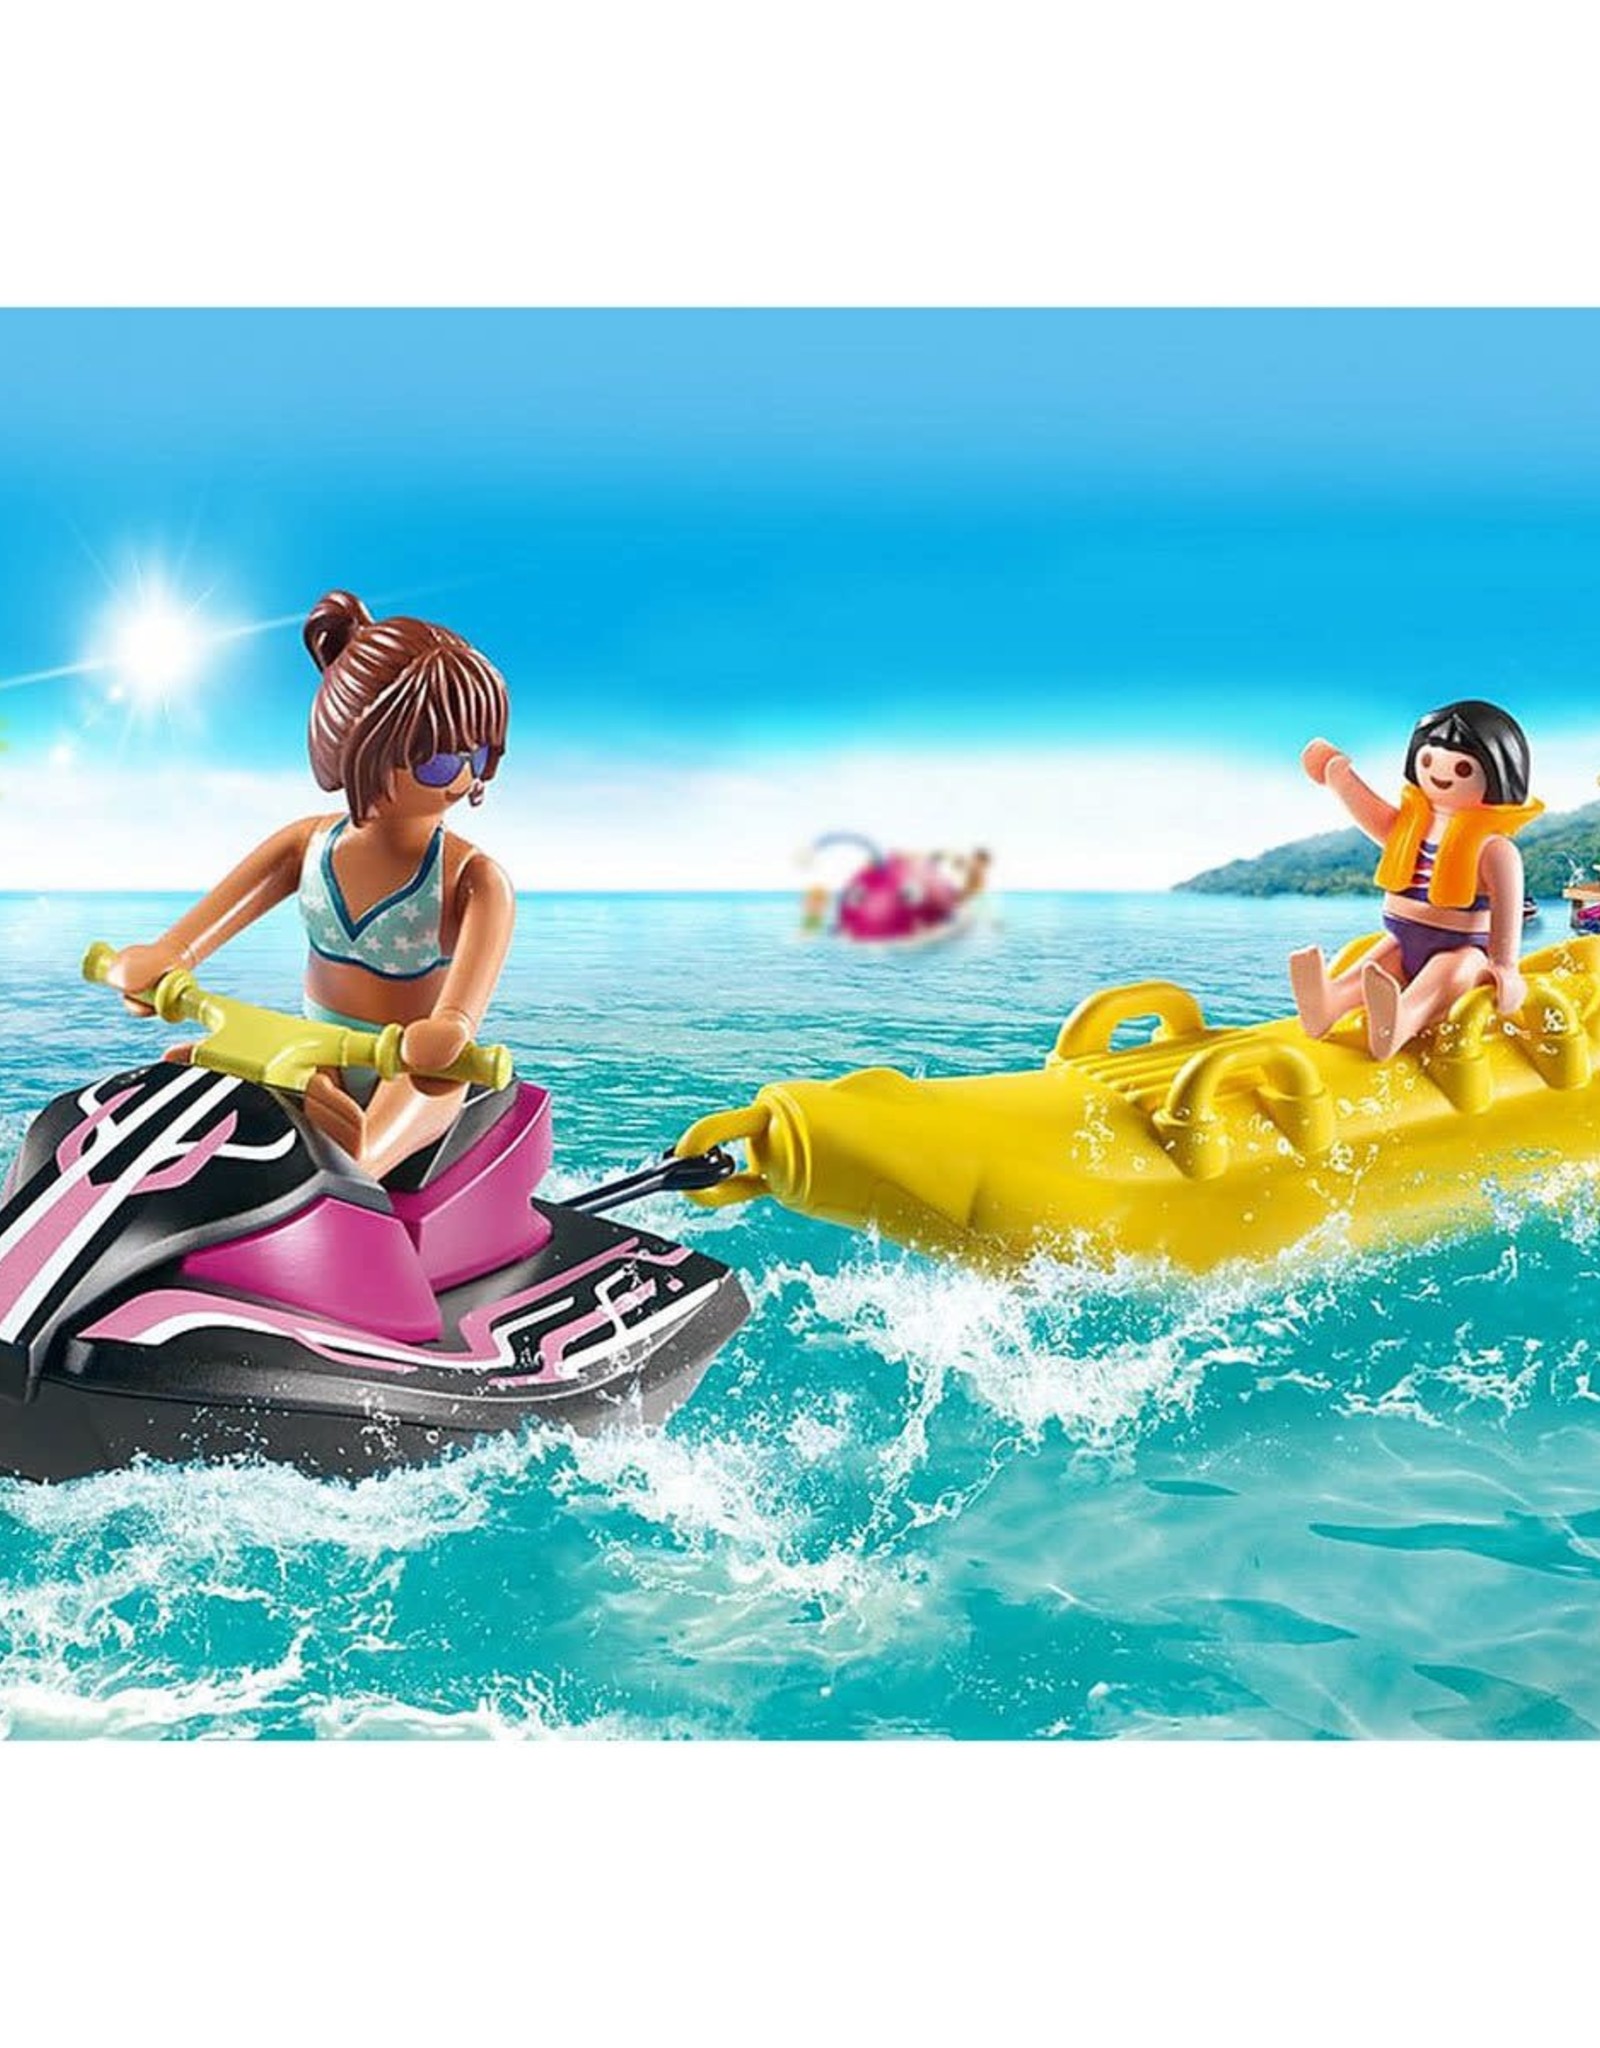 Playmobil ## Playmobil Starter Pack Jet Ski with Banana Boat